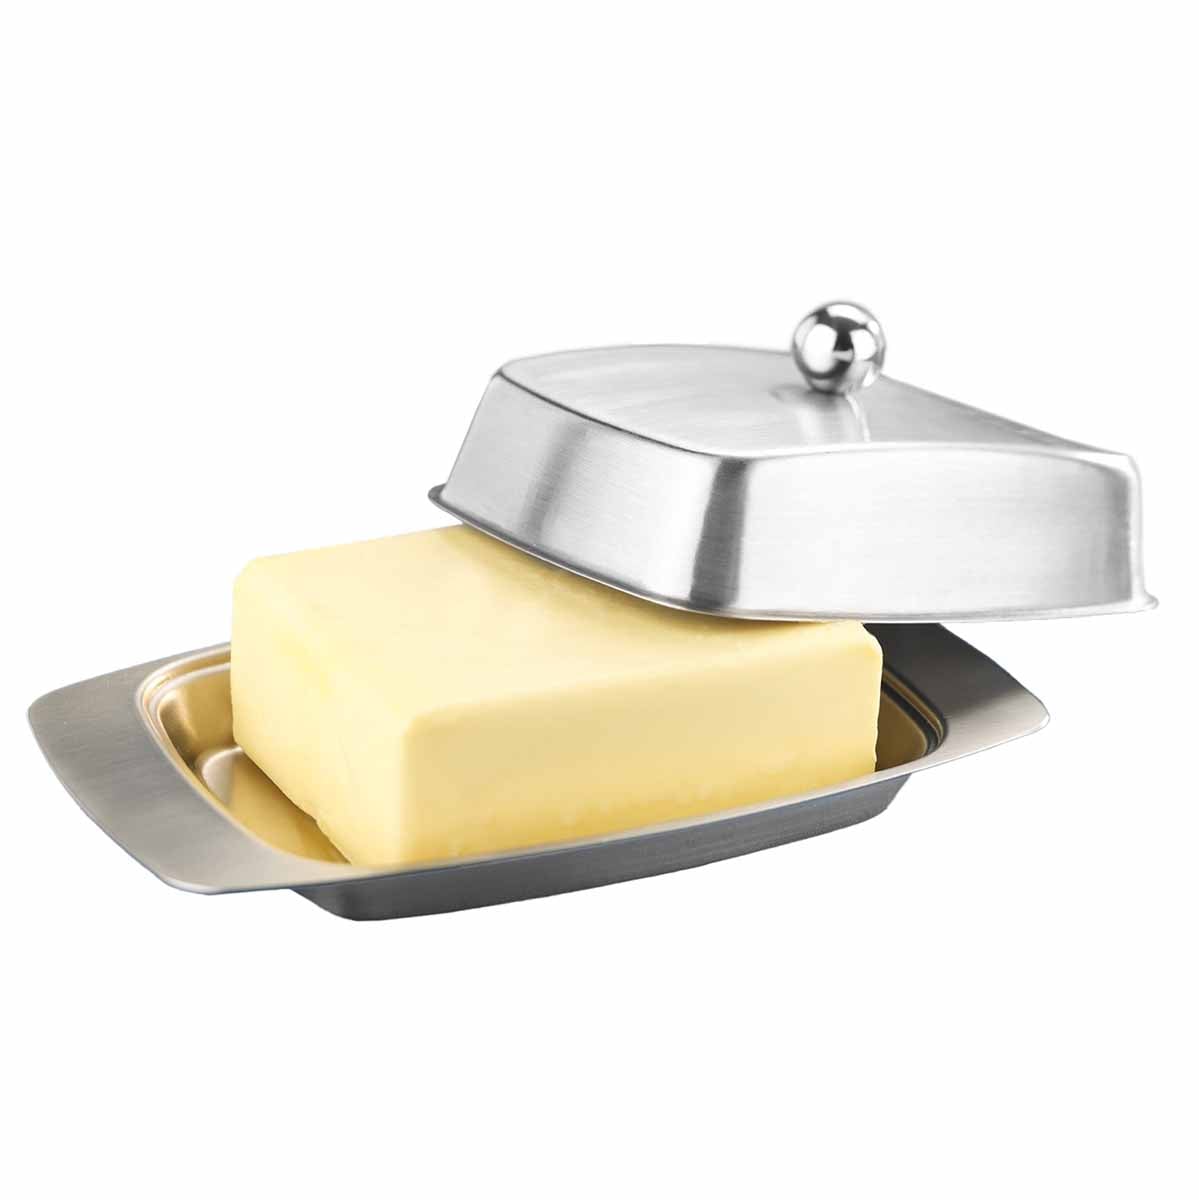 Butterdose aus temperiert Maximex - Edelstahl | Ihre Butter und Hält frisch